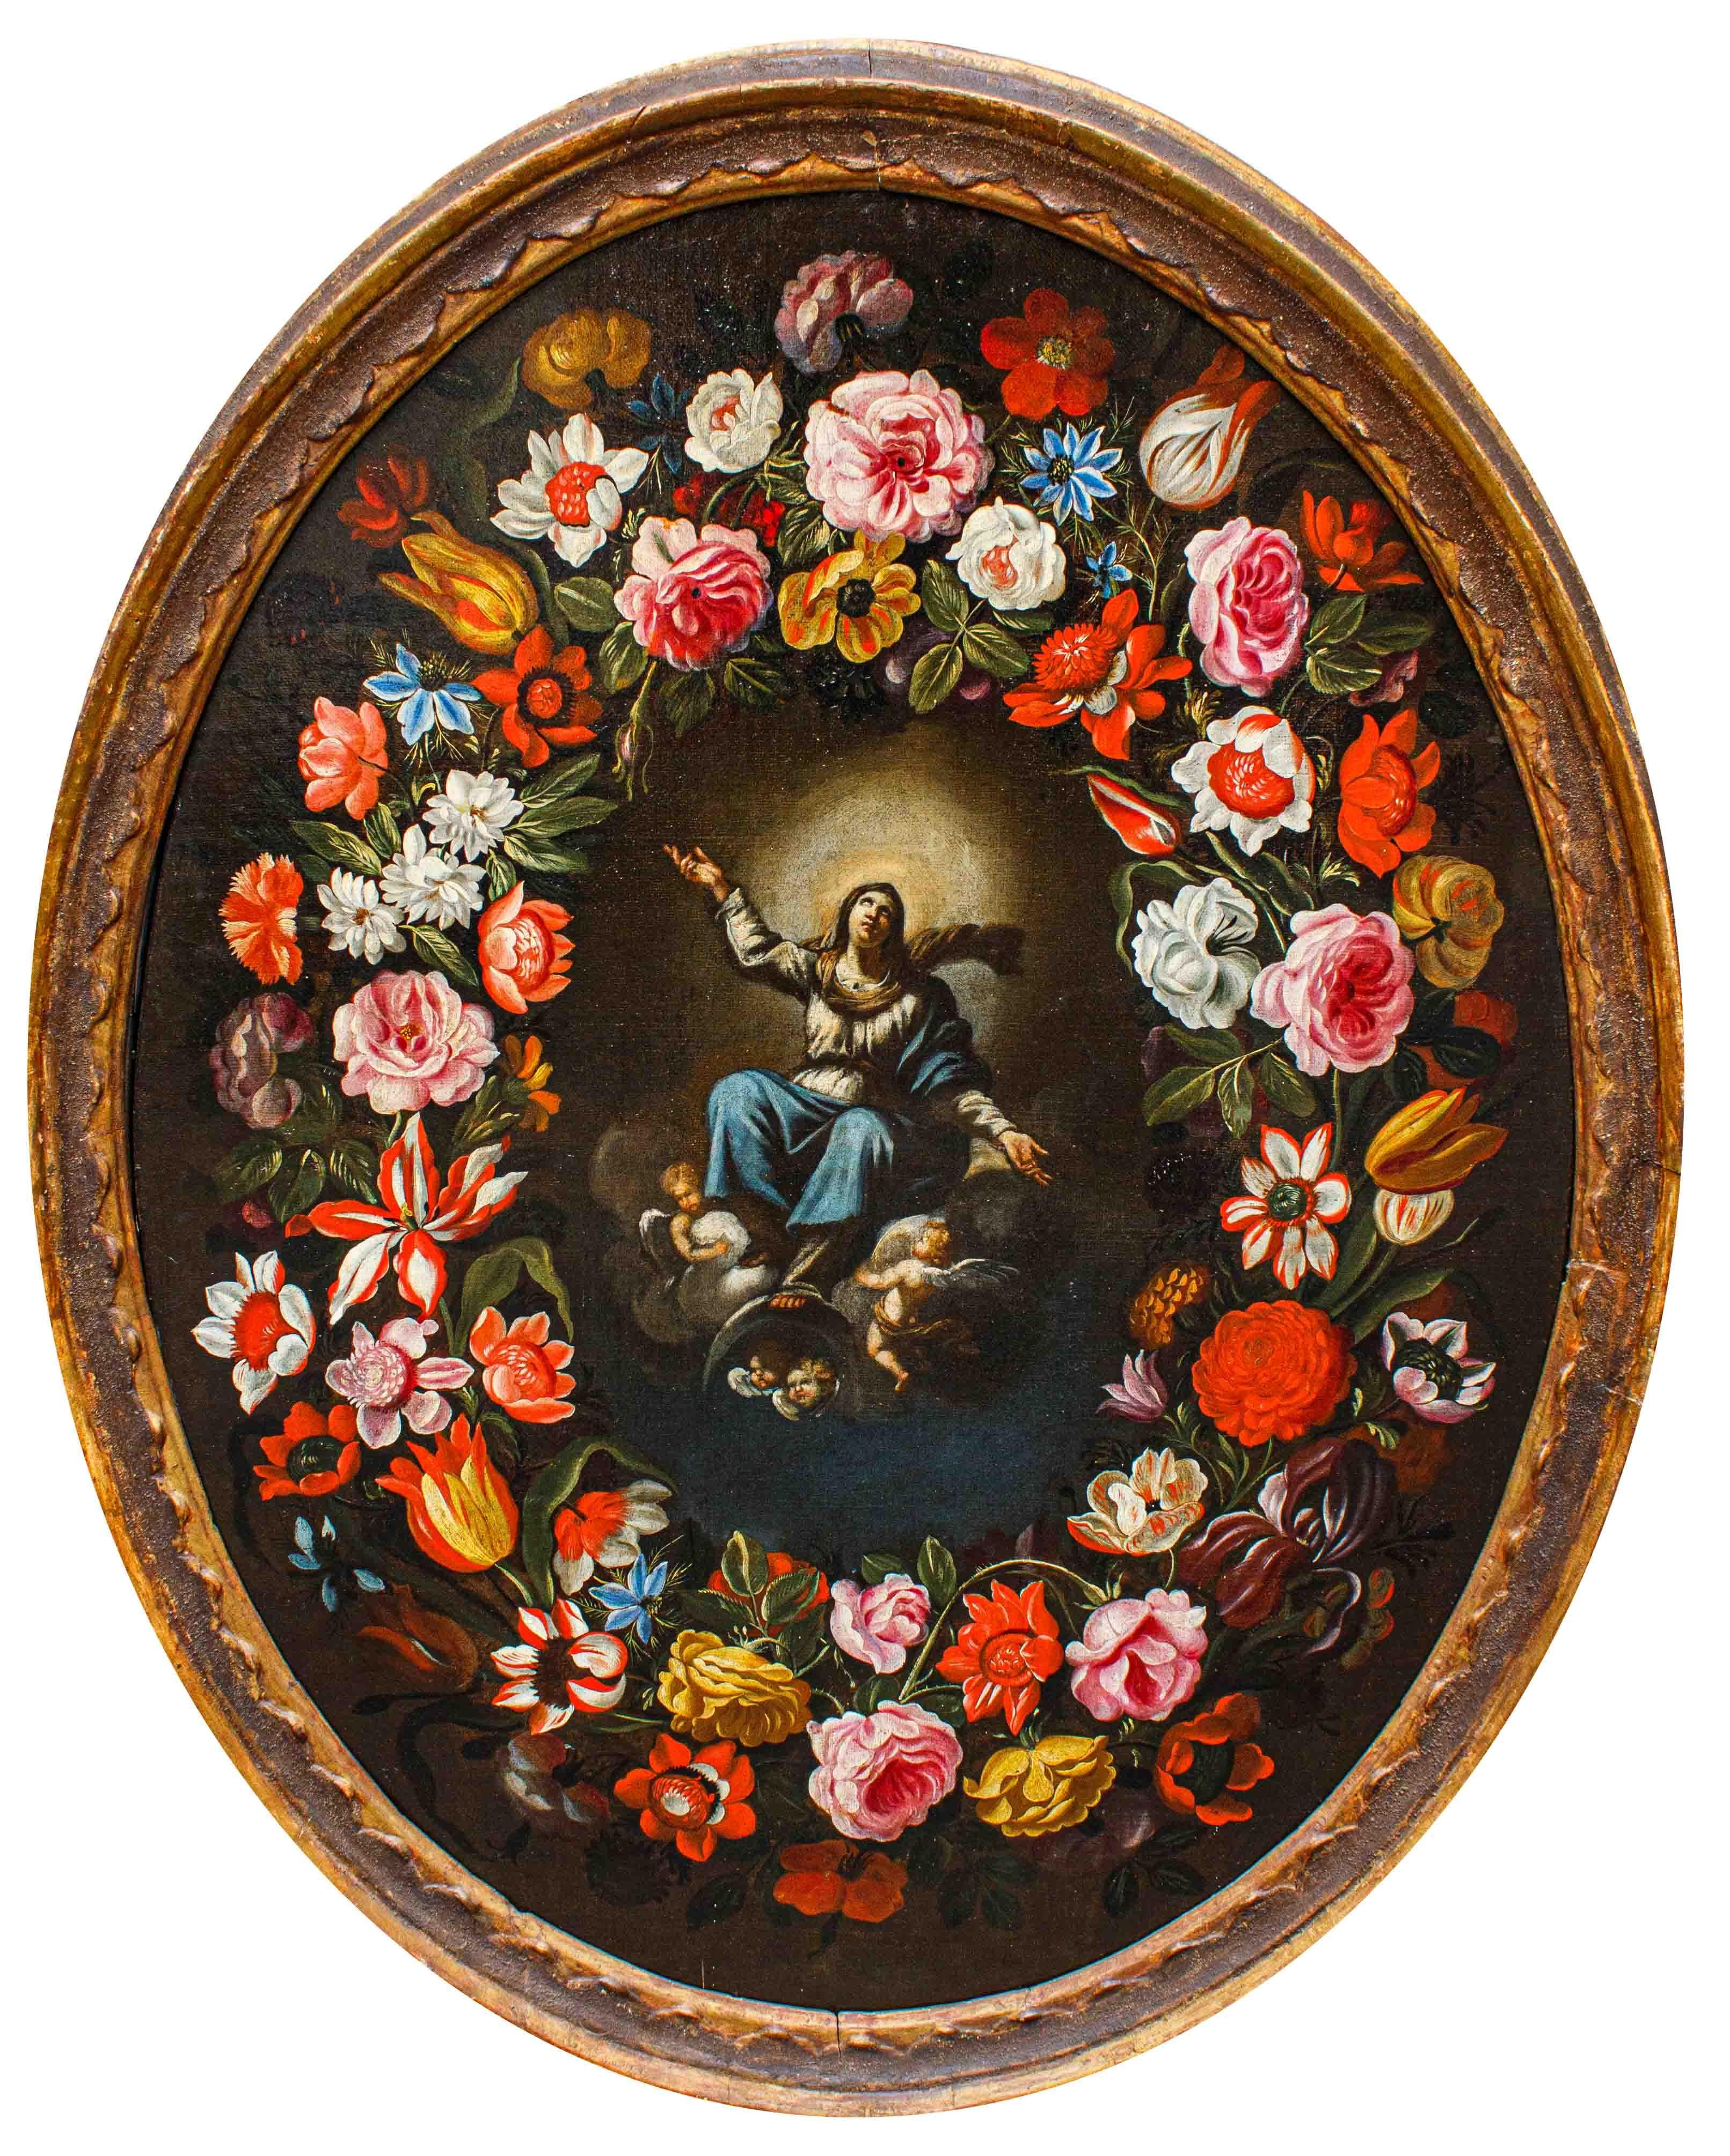 Giovanni Stanchi (Rome, 1608 - 1675) et Girolamo Pesci (Rome 1679 - 1759)

Vierge Immaculée dans une guirlande florale

Huile sur toile, 95 x 72 cm

Cadre, 106 x 83 cm

Rapport d'expert du Prof. Emilio Negro

Le présent tableau est le résultat d'une